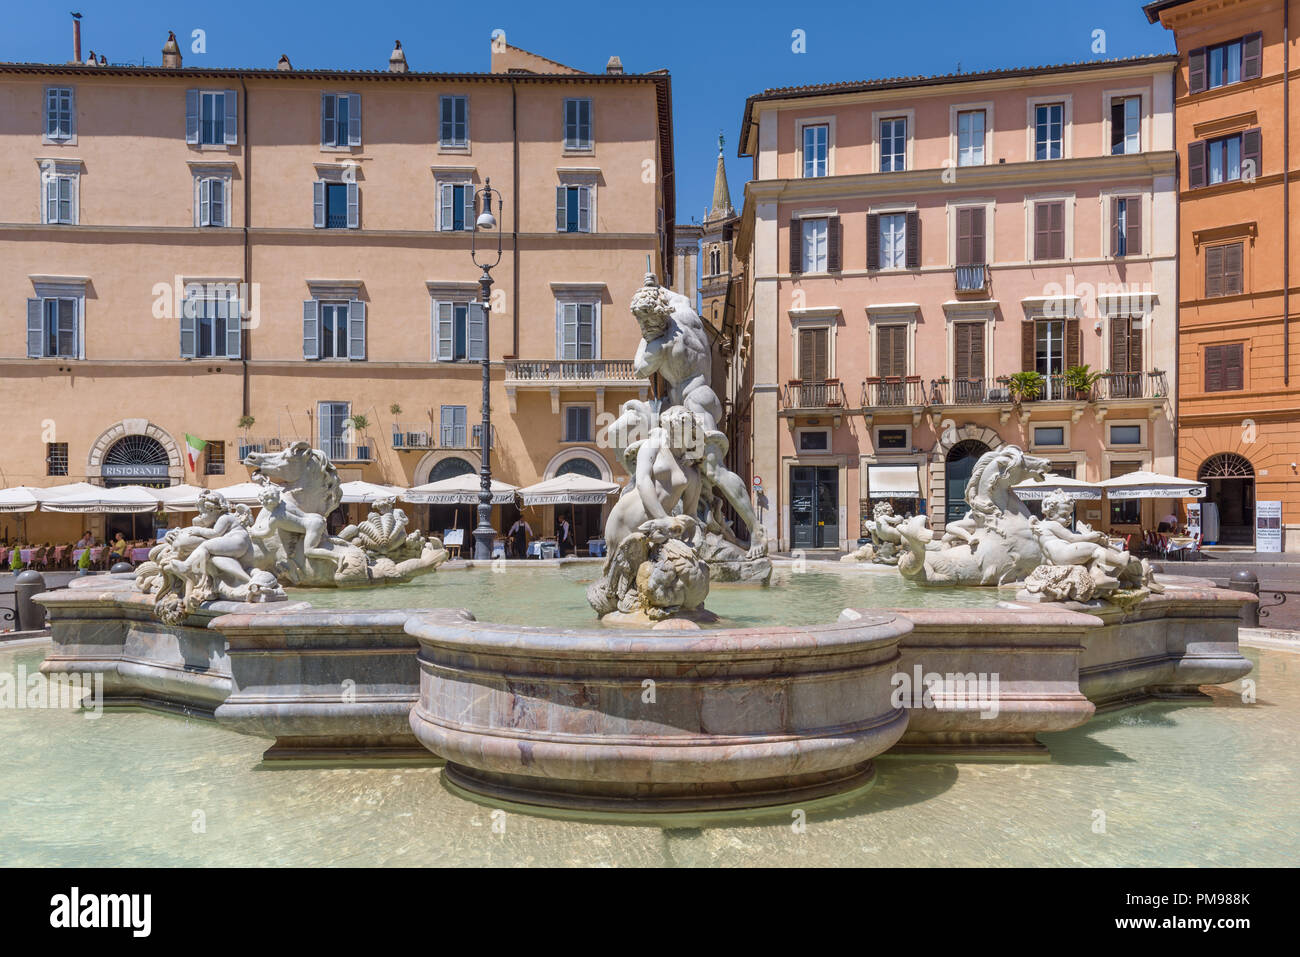 Fontana del Nettuno, Piazza Navona, Rome, Italy Stock Photo